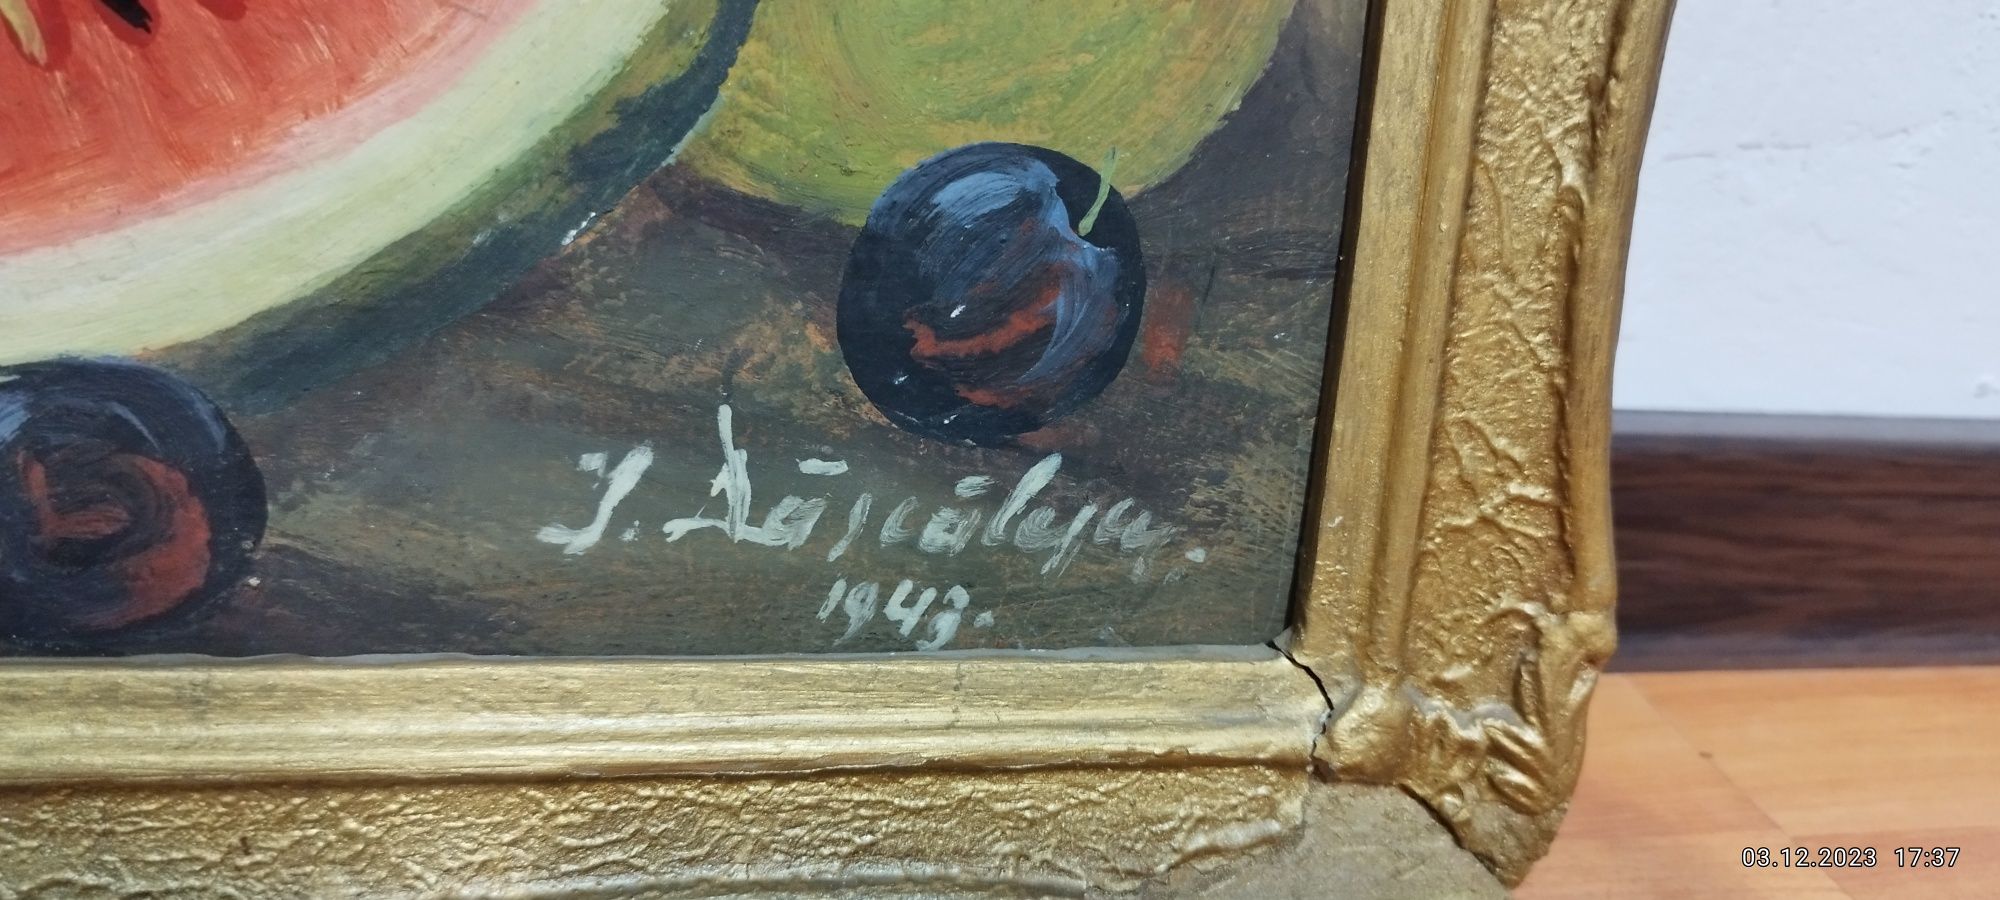 Pictura pe placaj din 1943.